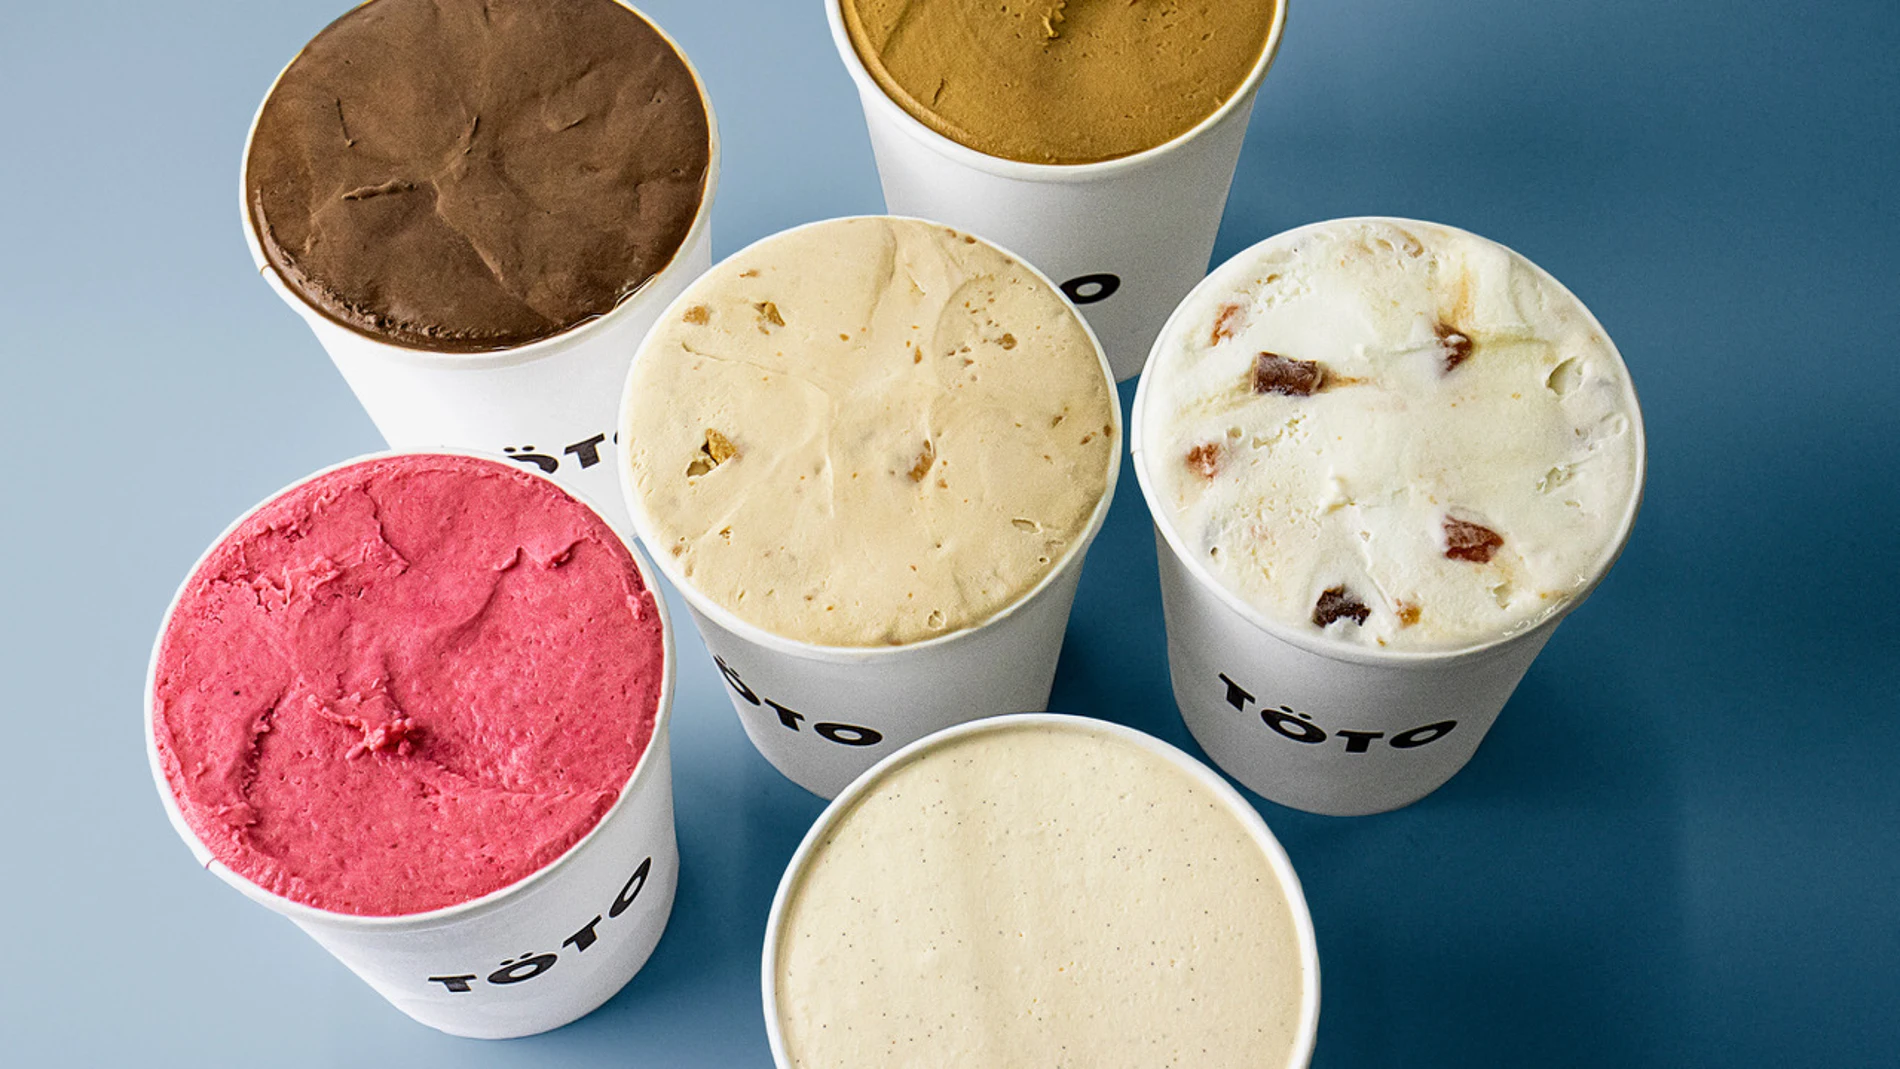 Töto Ice Cream presenta entre 18 y 26 helados según la temporada